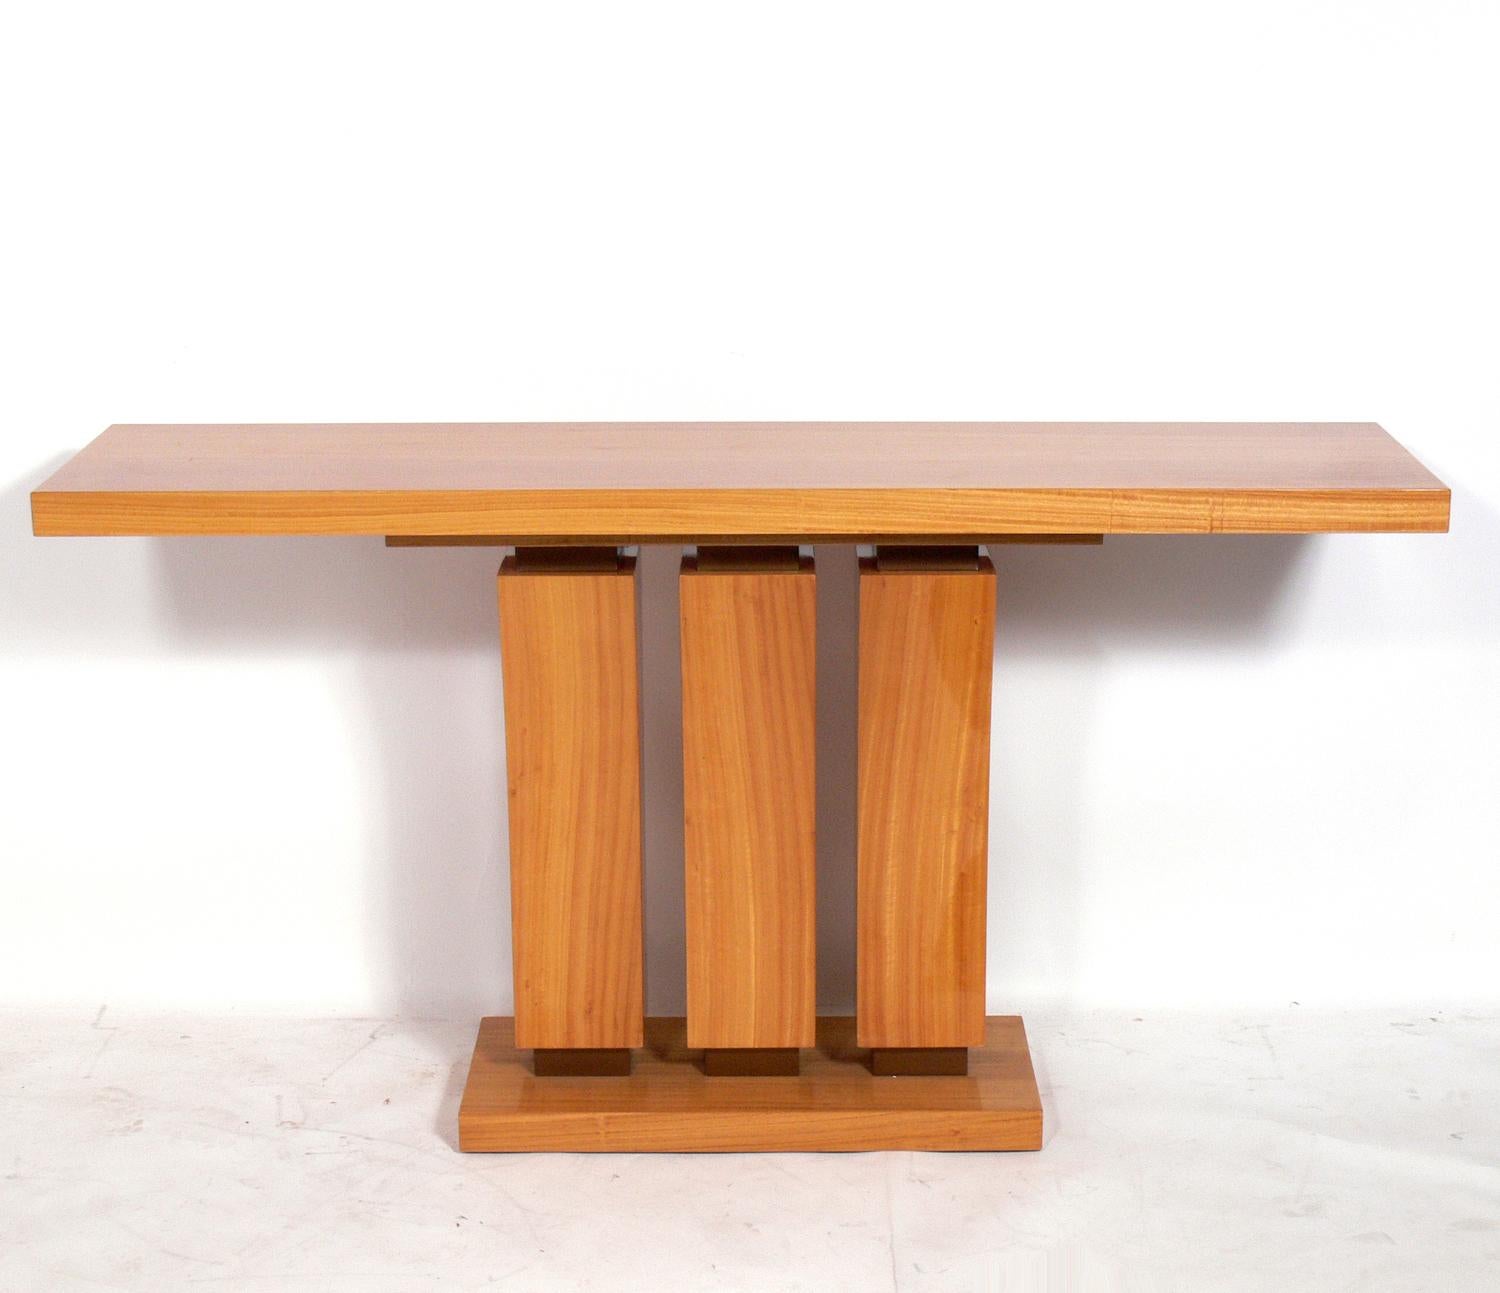 Konsolentisch aus satiniertem Holz, amerikanisch, ca. 1990er Jahre. Es basiert auf einem französischen Art-déco-Design aus den 1930er Jahren. Schöne Maserung des Satinholzes. Er hat eine vielseitige Größe und kann als Konsolentisch, Sofatisch oder